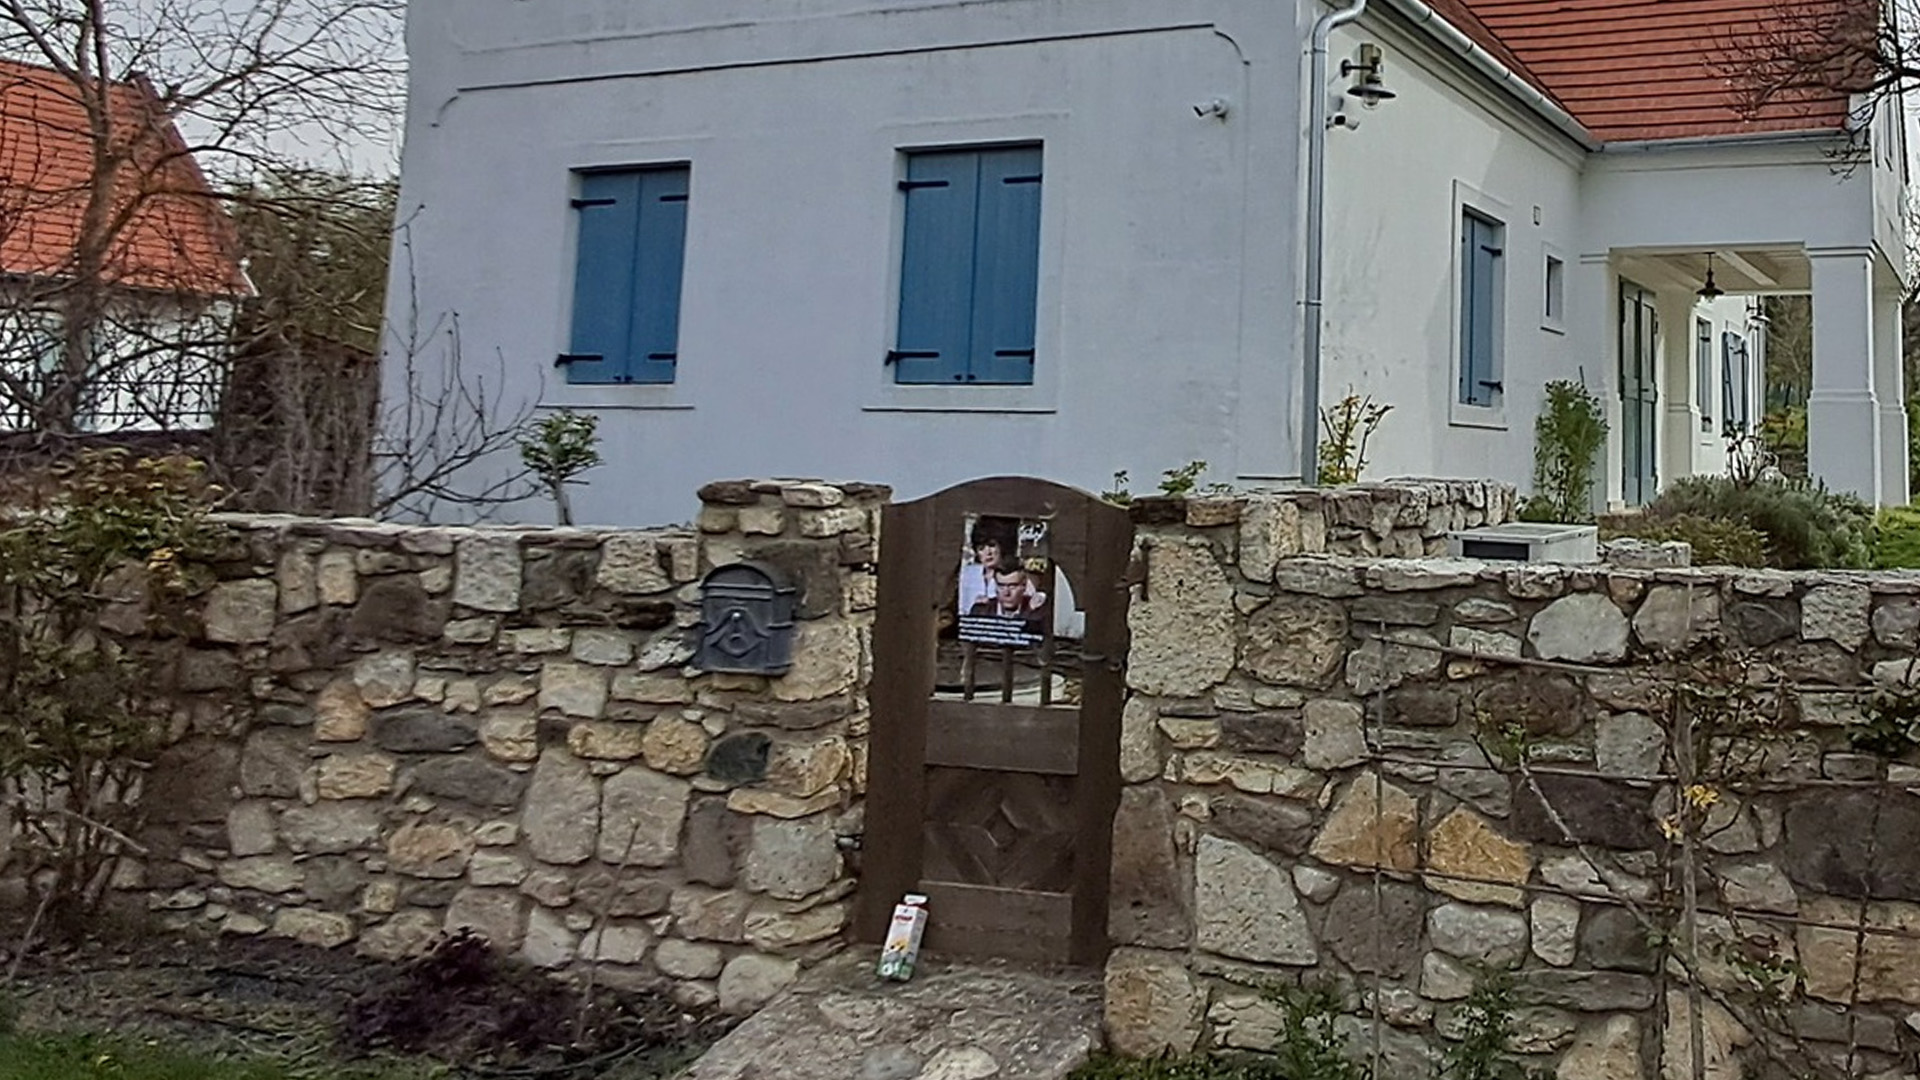 Jockey és Samantha várja most az érkezőket Varga Judit balatonhenyei házának kapujában